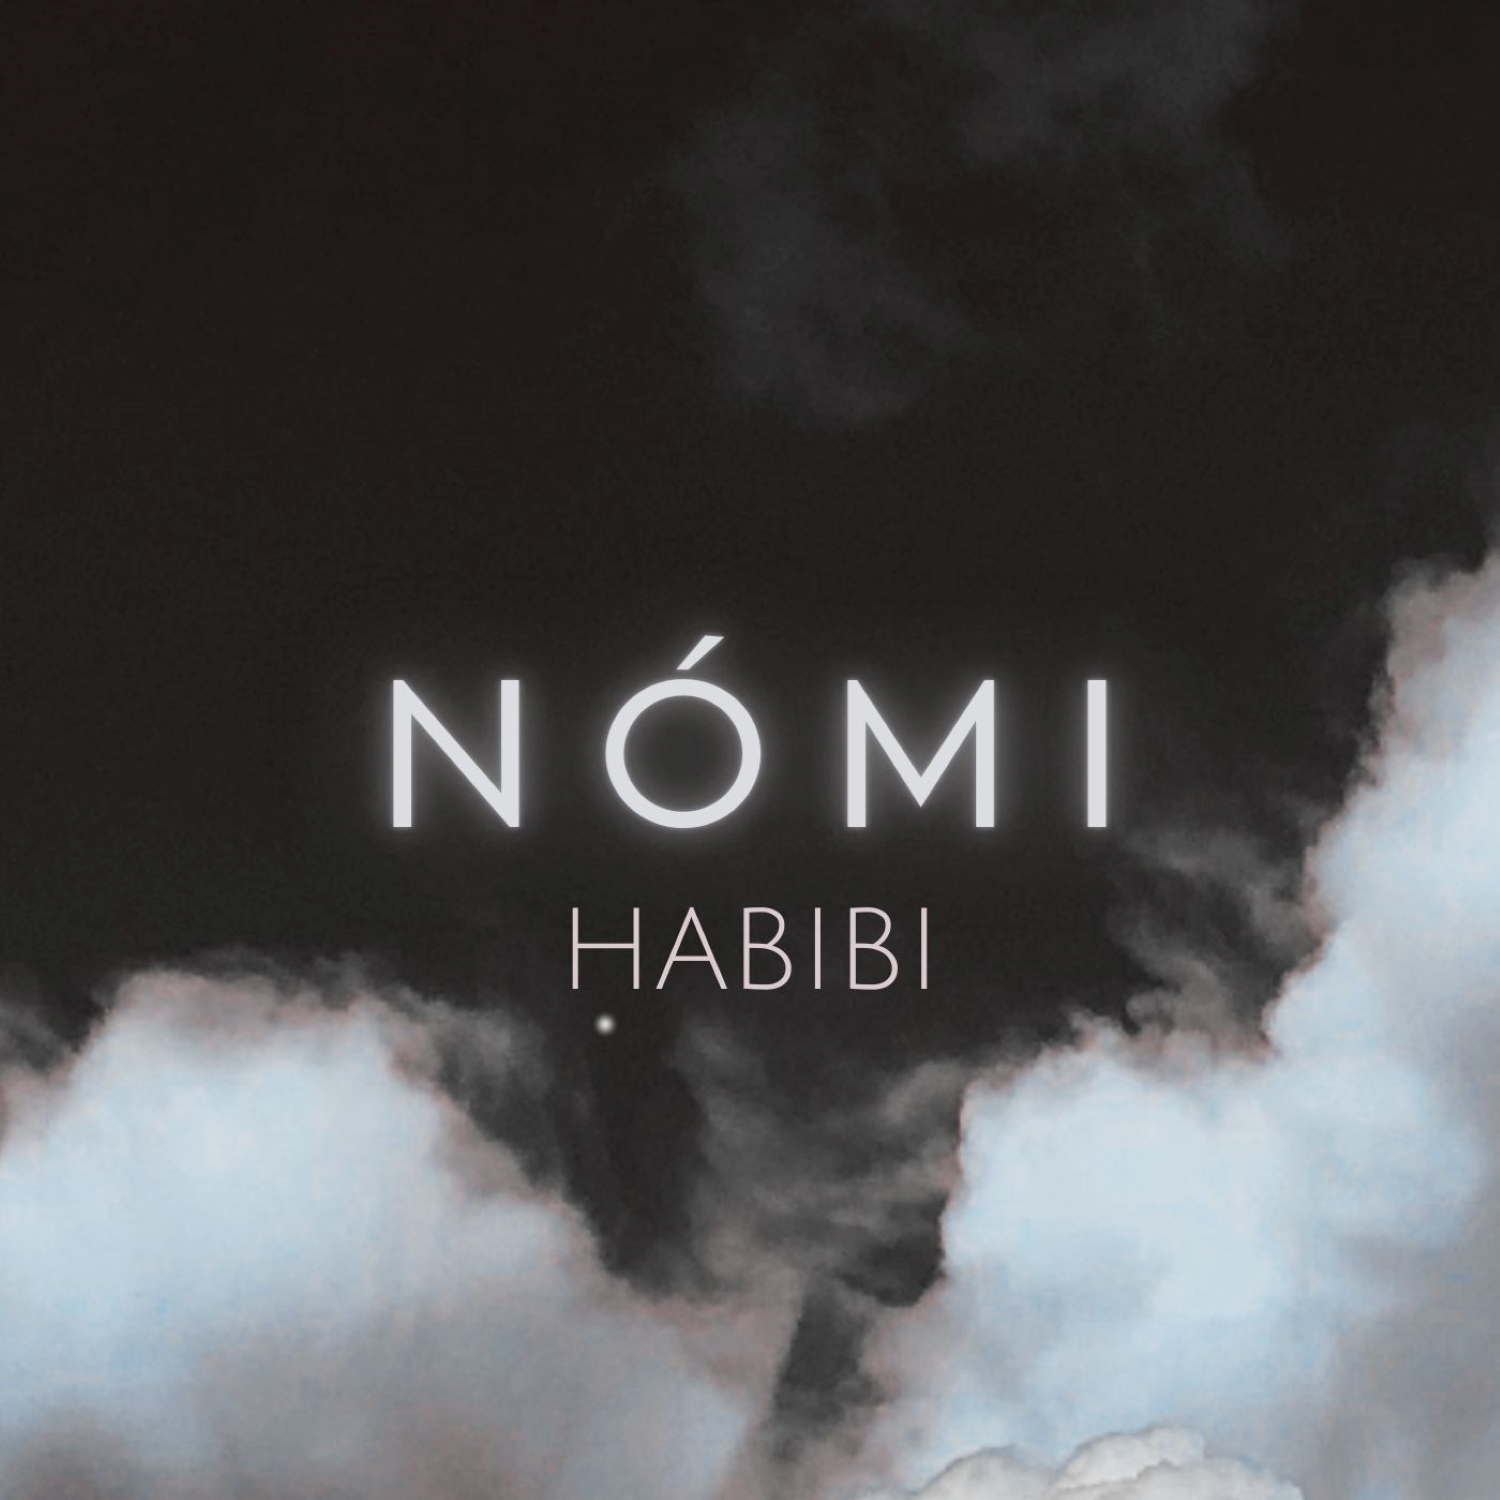 Habibi Album Cover Believe